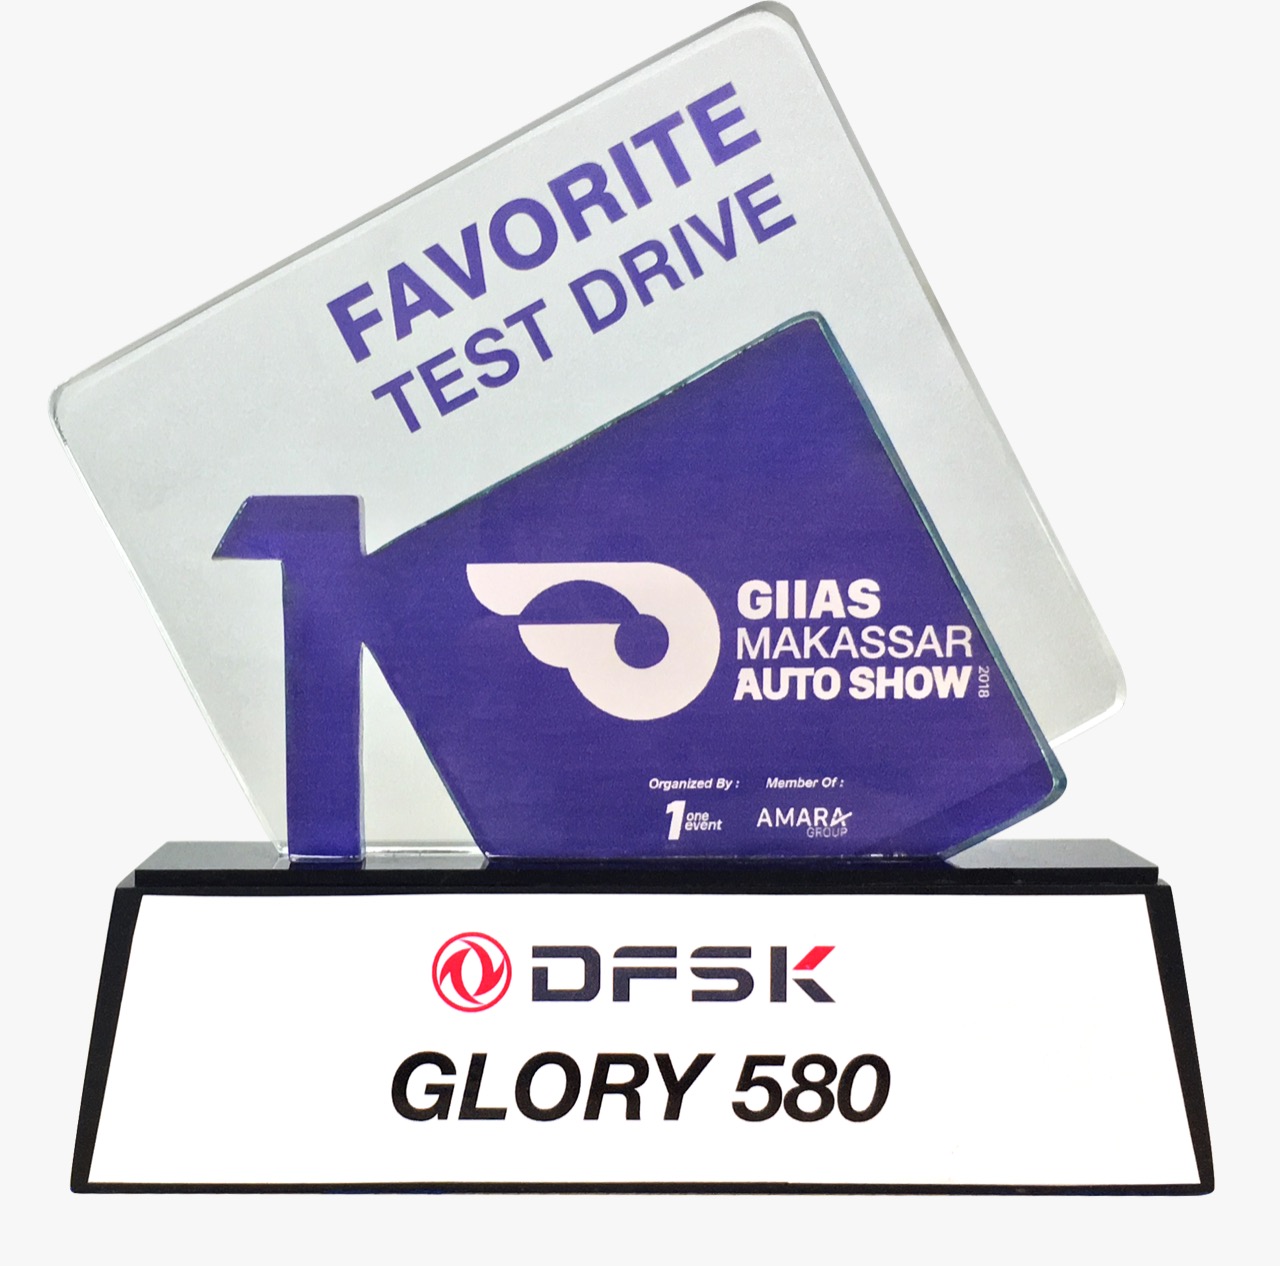 GIIAS Makassar 2018 First Winner Favorite Test Drive - DFSK Glory 580